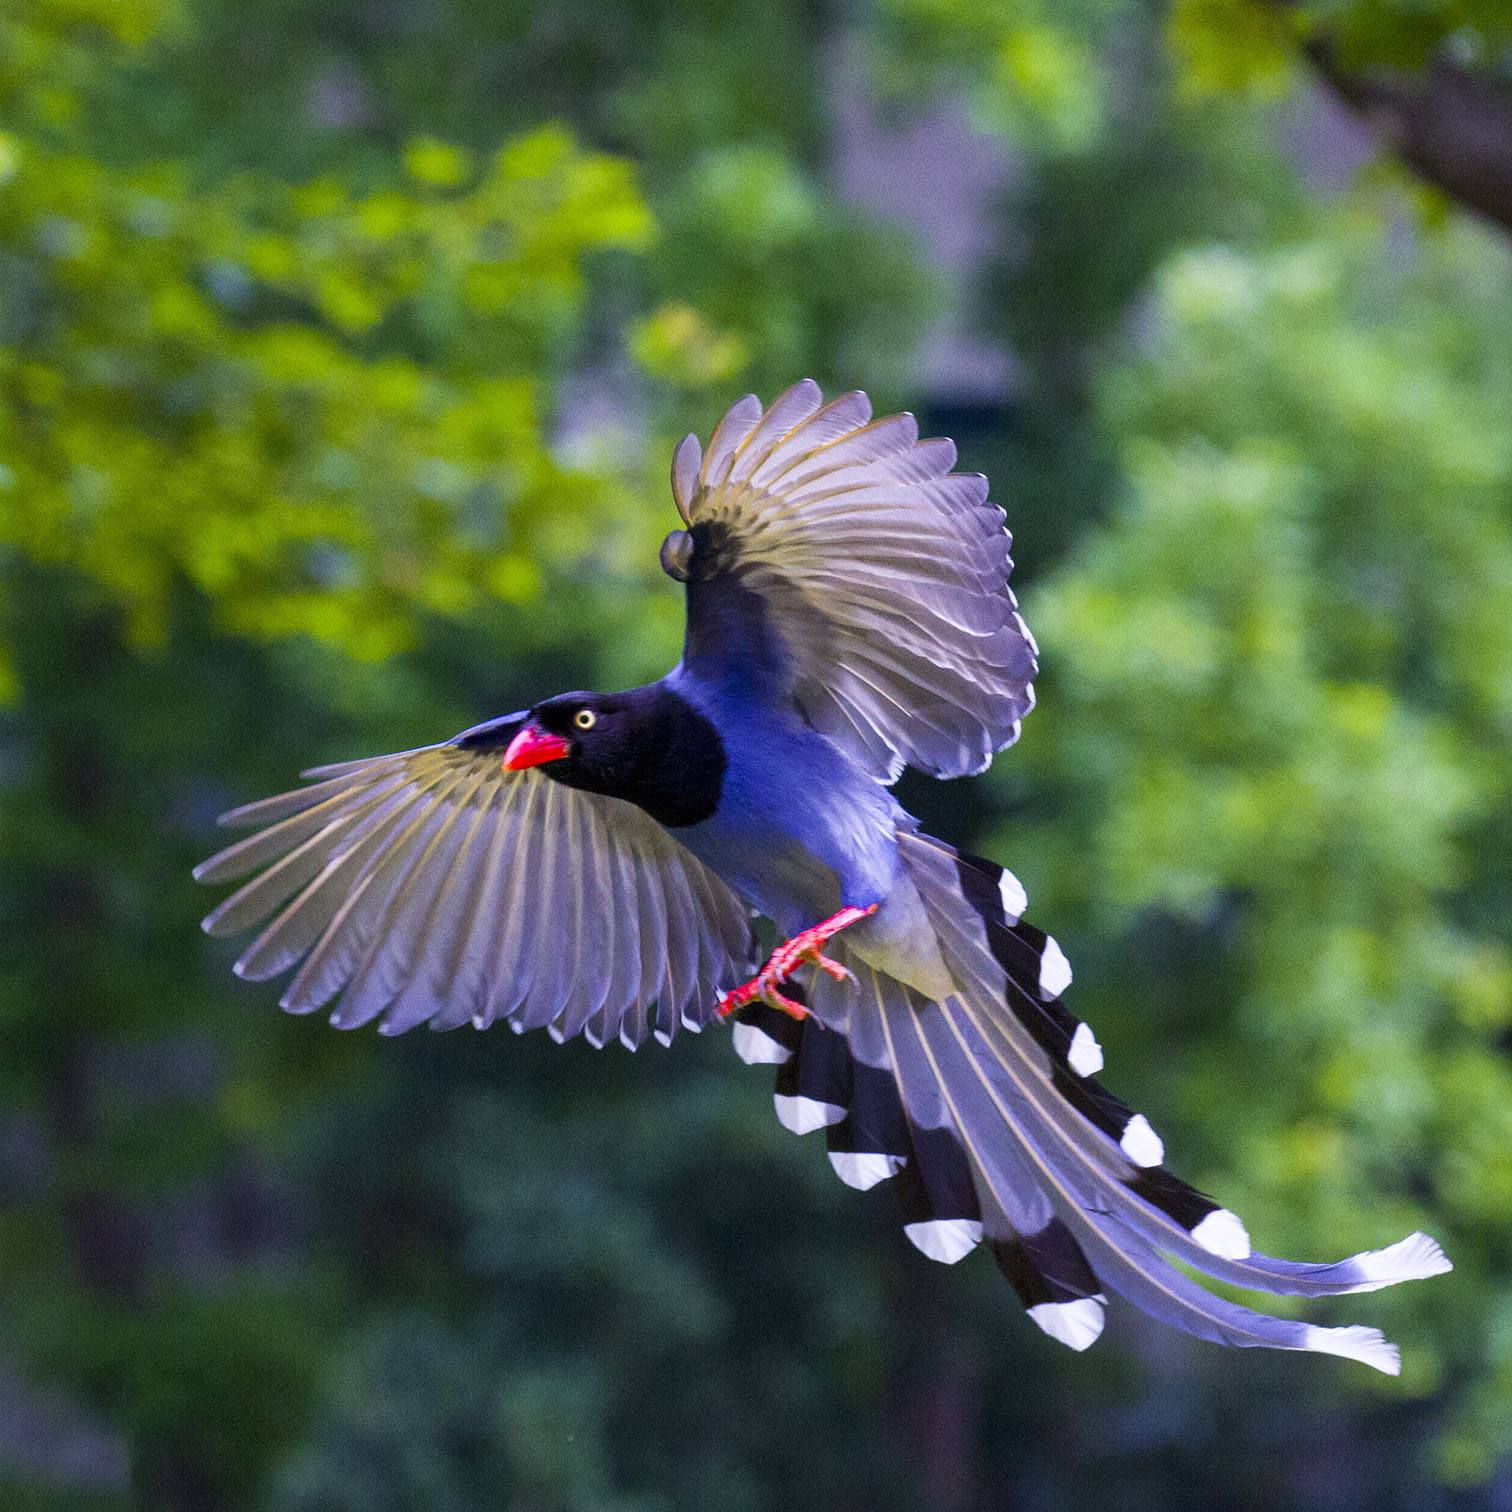 对比鲜明的黑色,白色和天蓝色羽毛以及红色的鸟曝和腿